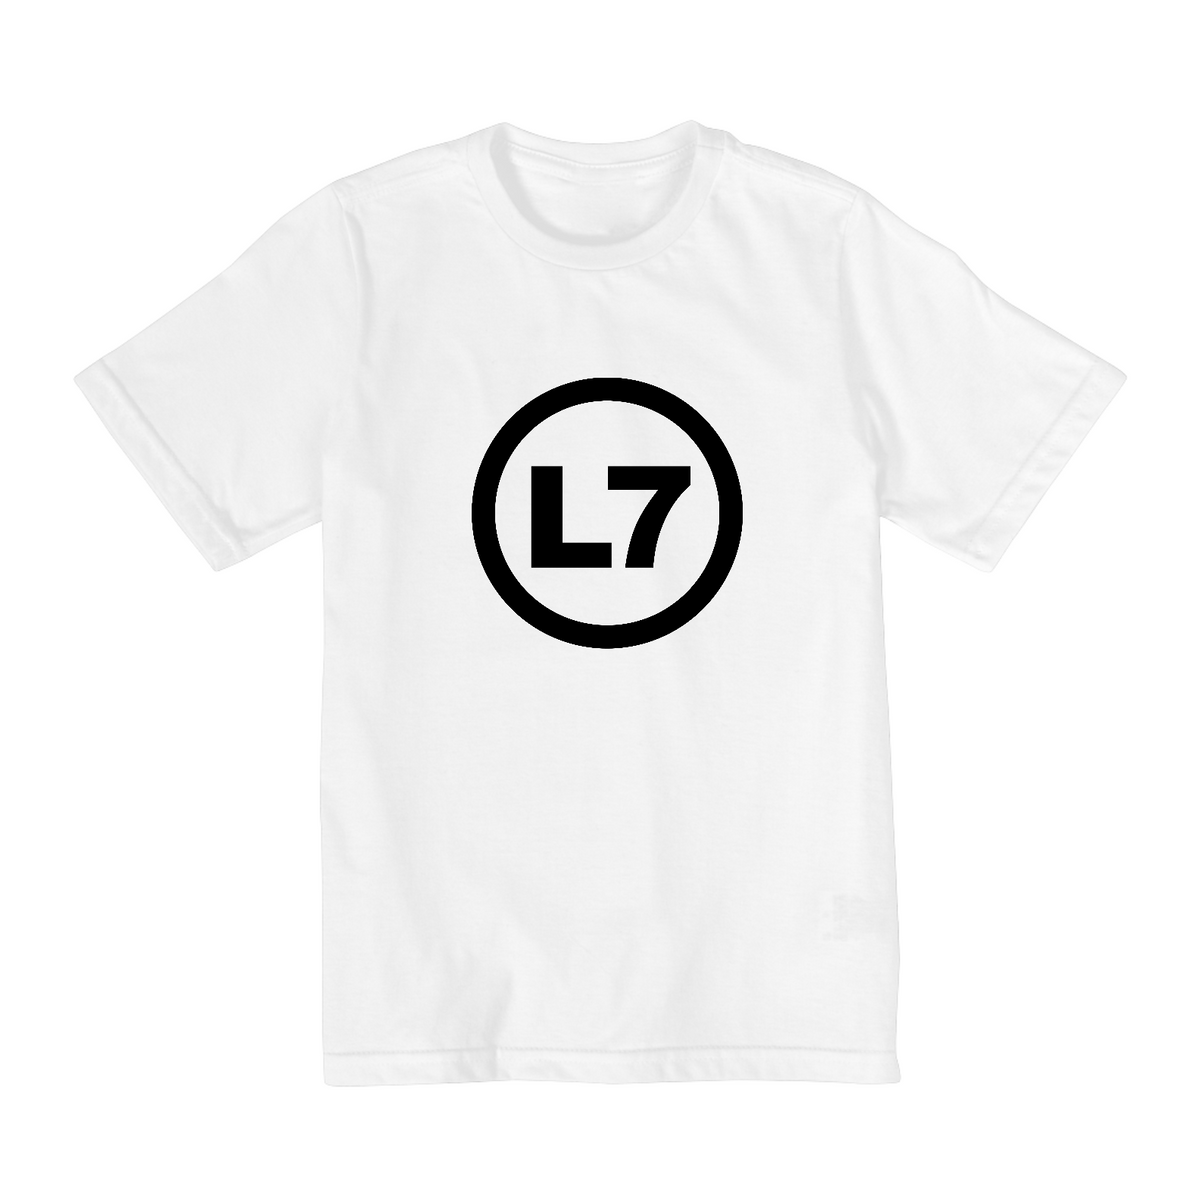 Nome do produto: Camiseta Infantil 02 a 08 anos - Bandas - L7